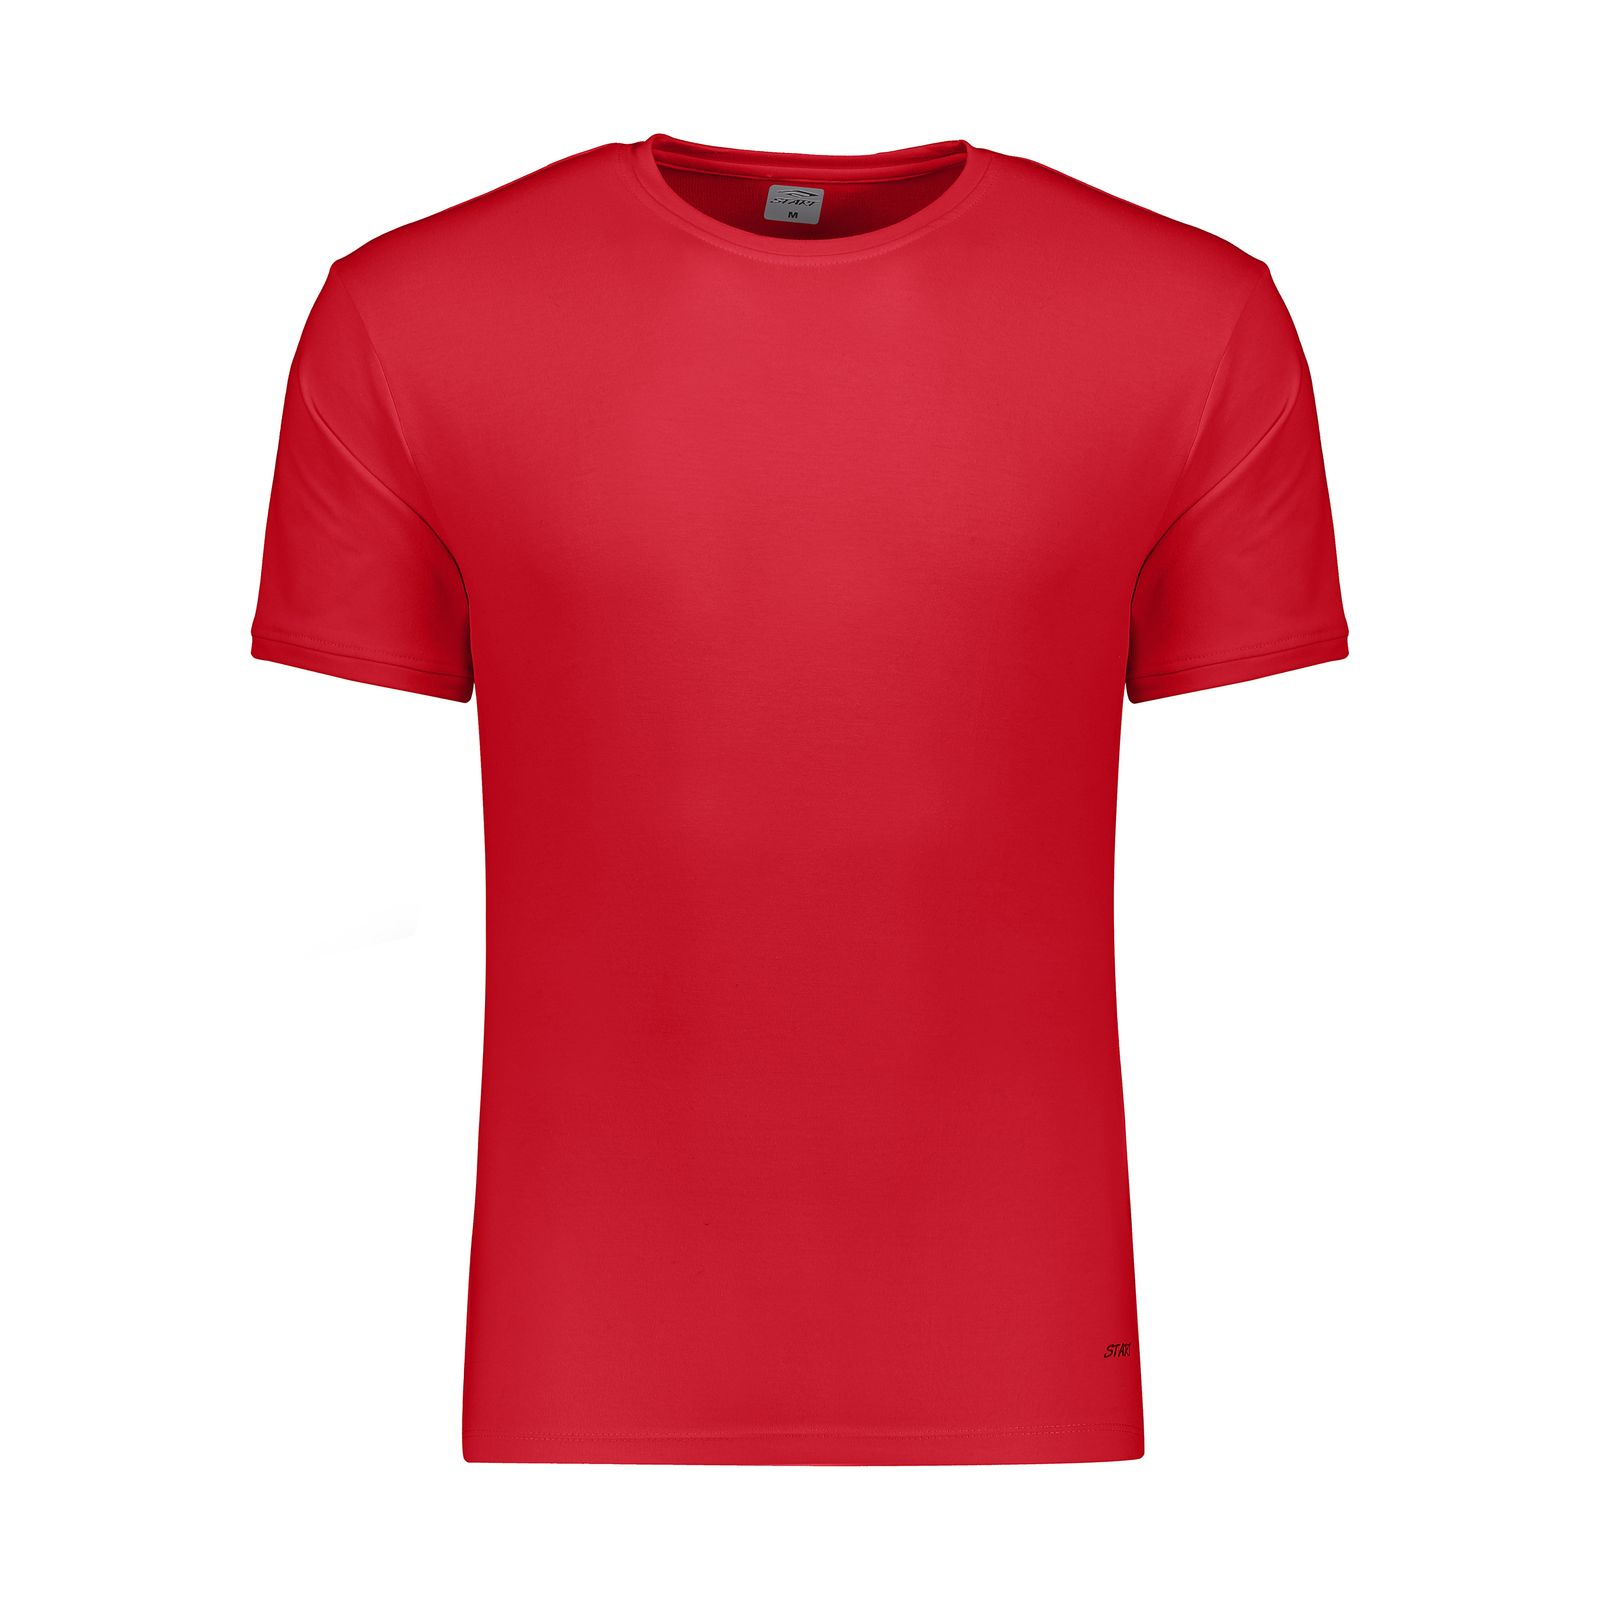 تی شرت ورزشی مردانه استارت مدل 2111194-72 -  - 1